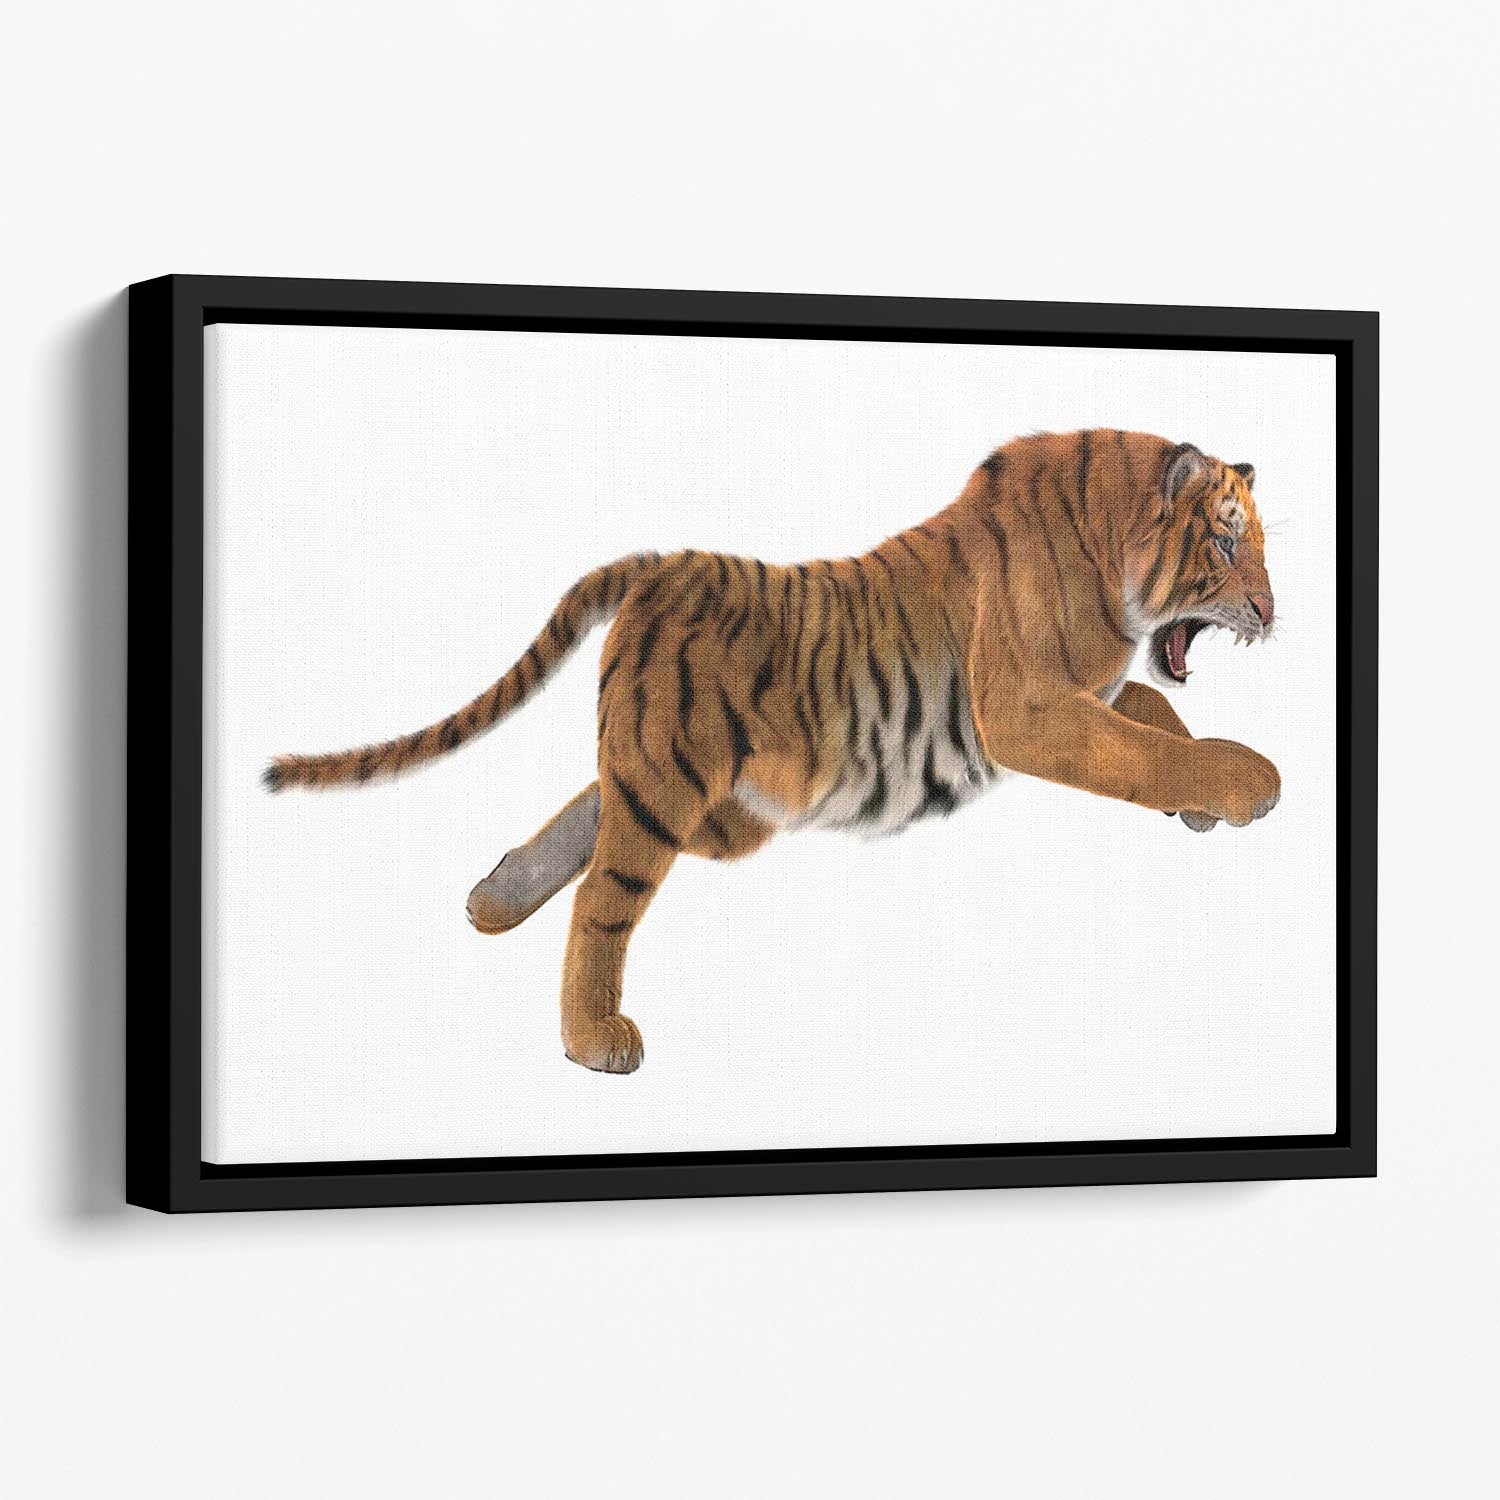 3D digital render of a hunting big cat Floating Framed Canvas - Canvas Art Rocks - 1